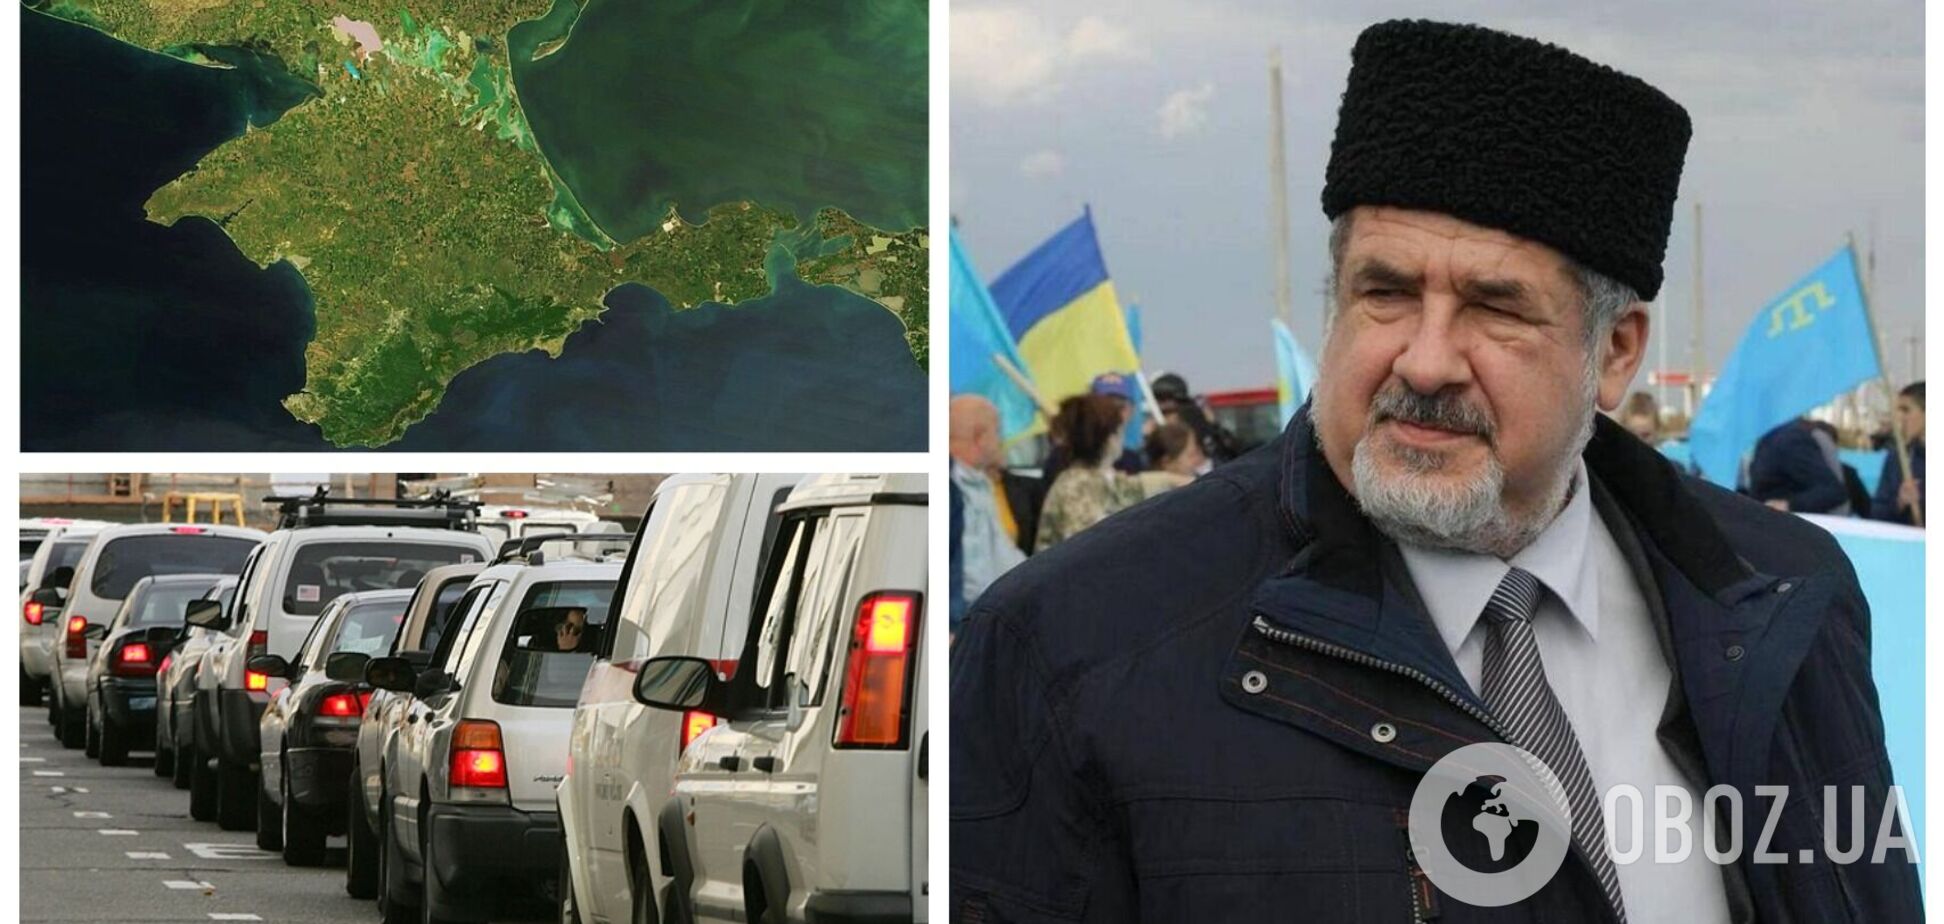 Мешканці окупованого Криму виїжджають з півострова цілими родинами, щоб уникнути мобілізації, – Чубаров